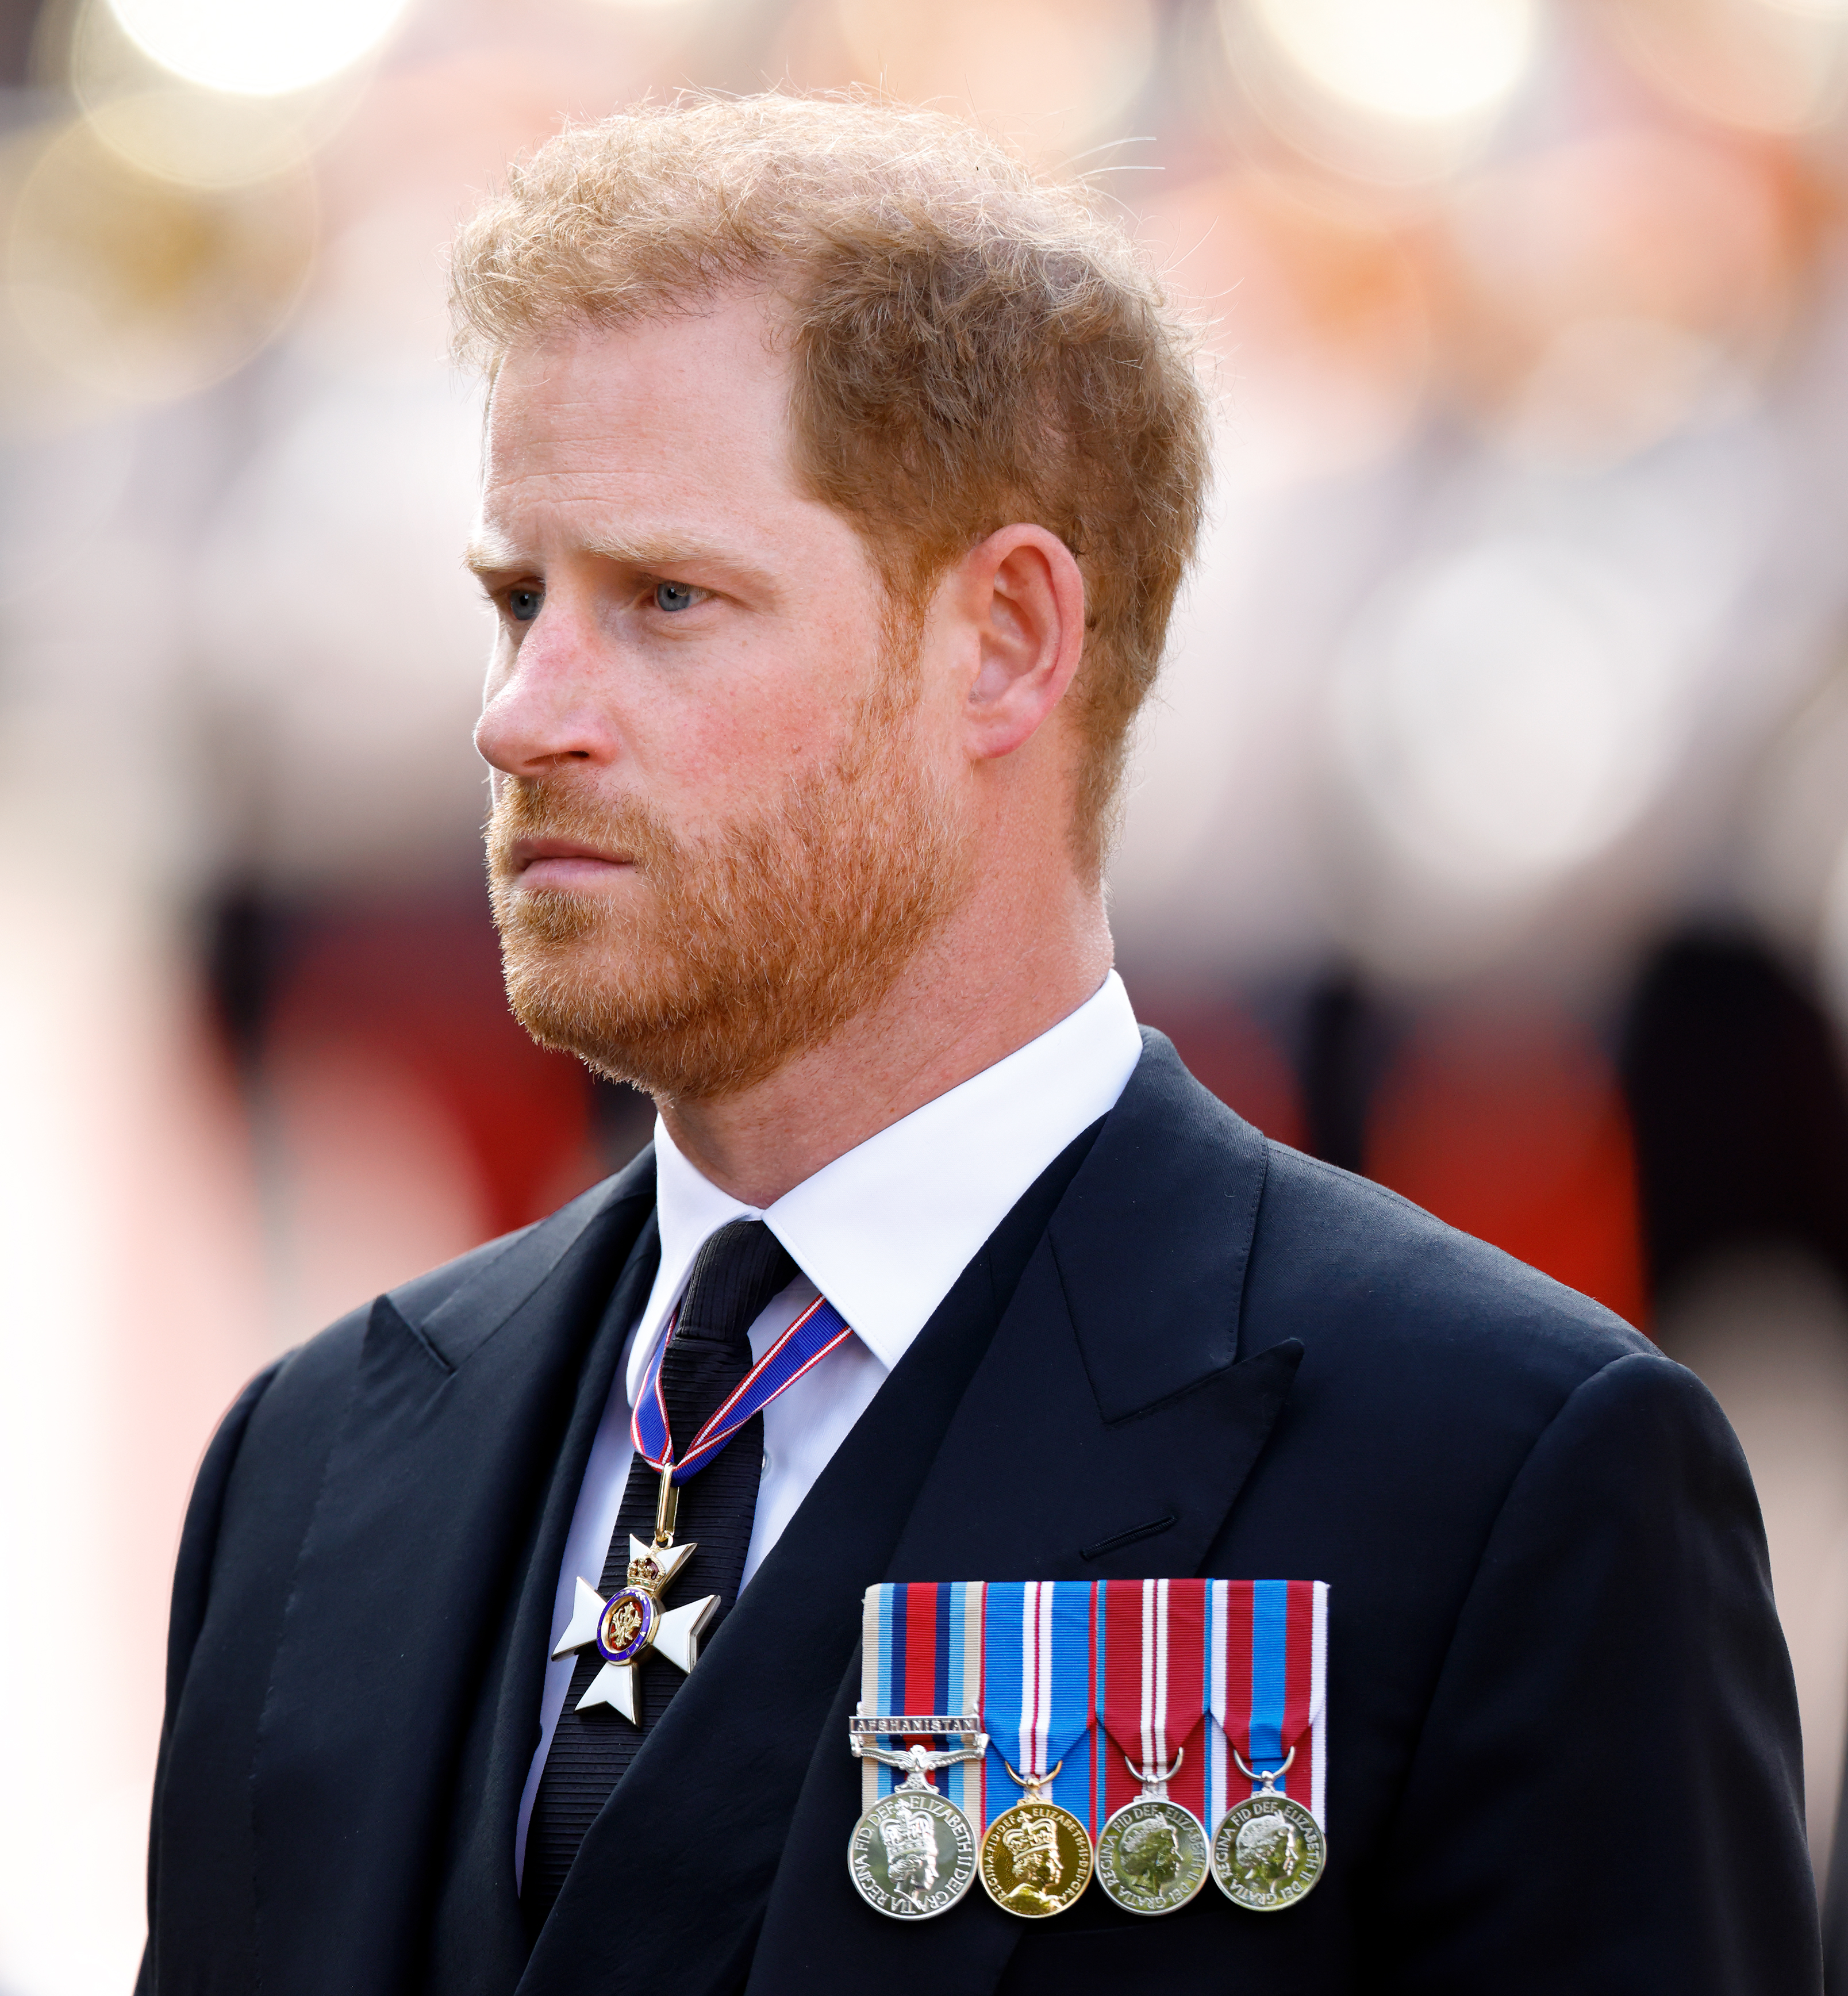 El príncipe Harry durante el traslado del féretro de la reina Isabel II desde el Palacio de Buckingham al Palacio de Westminster en Londres, Inglaterra, el 14 de septiembre de 2022 | Fuente: Getty Images